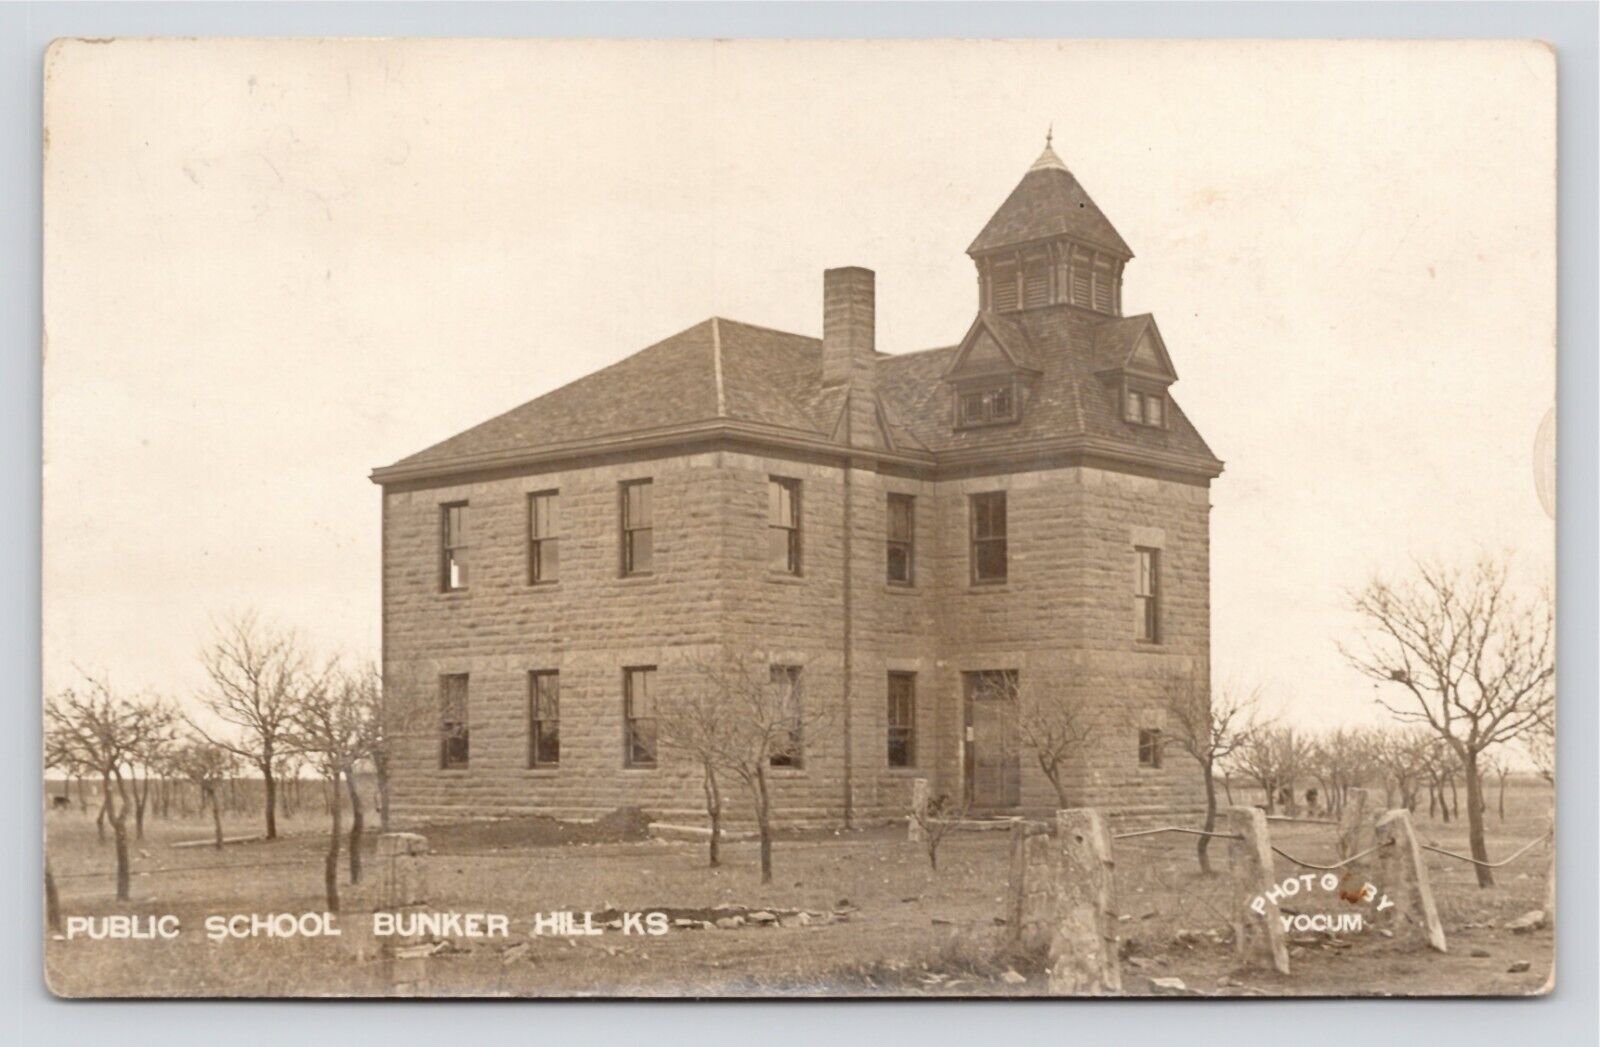 RPPC Public School Bunker Hill Kansas Antique VTG c1909 Yocum Photo Postcard